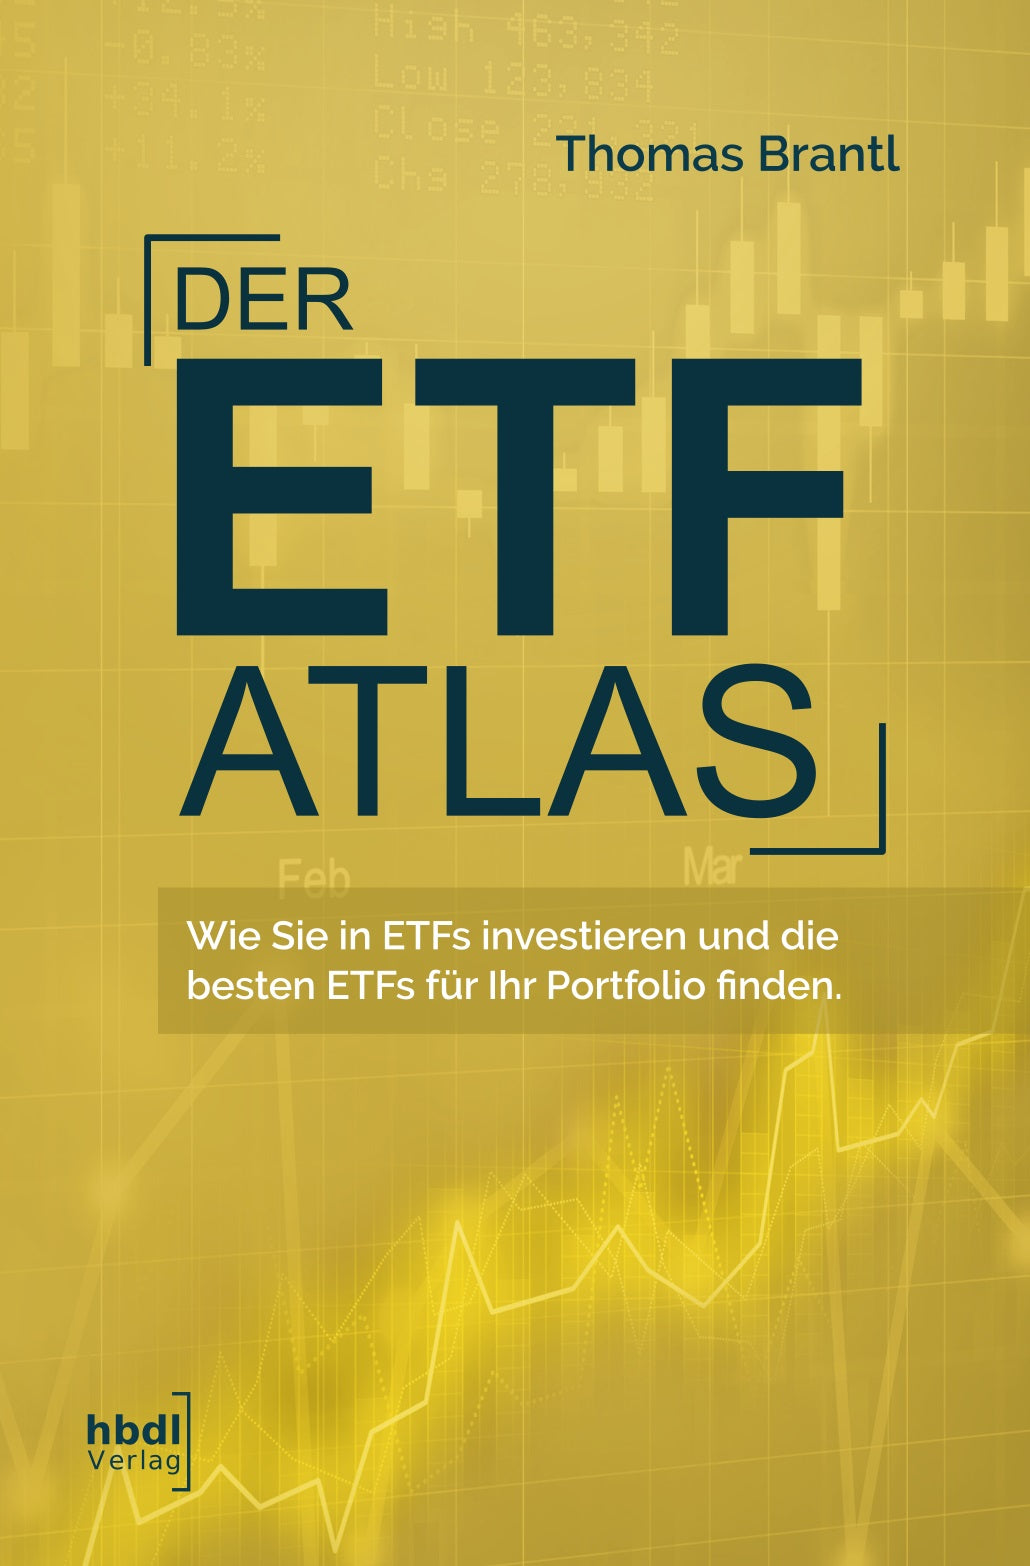 Der ETF-Atlas: Wie Sie in ETFs investieren und die besten ETFs für Ihr Portfolio finden (Sofort-Download im pdf-Format, 190 Seiten)